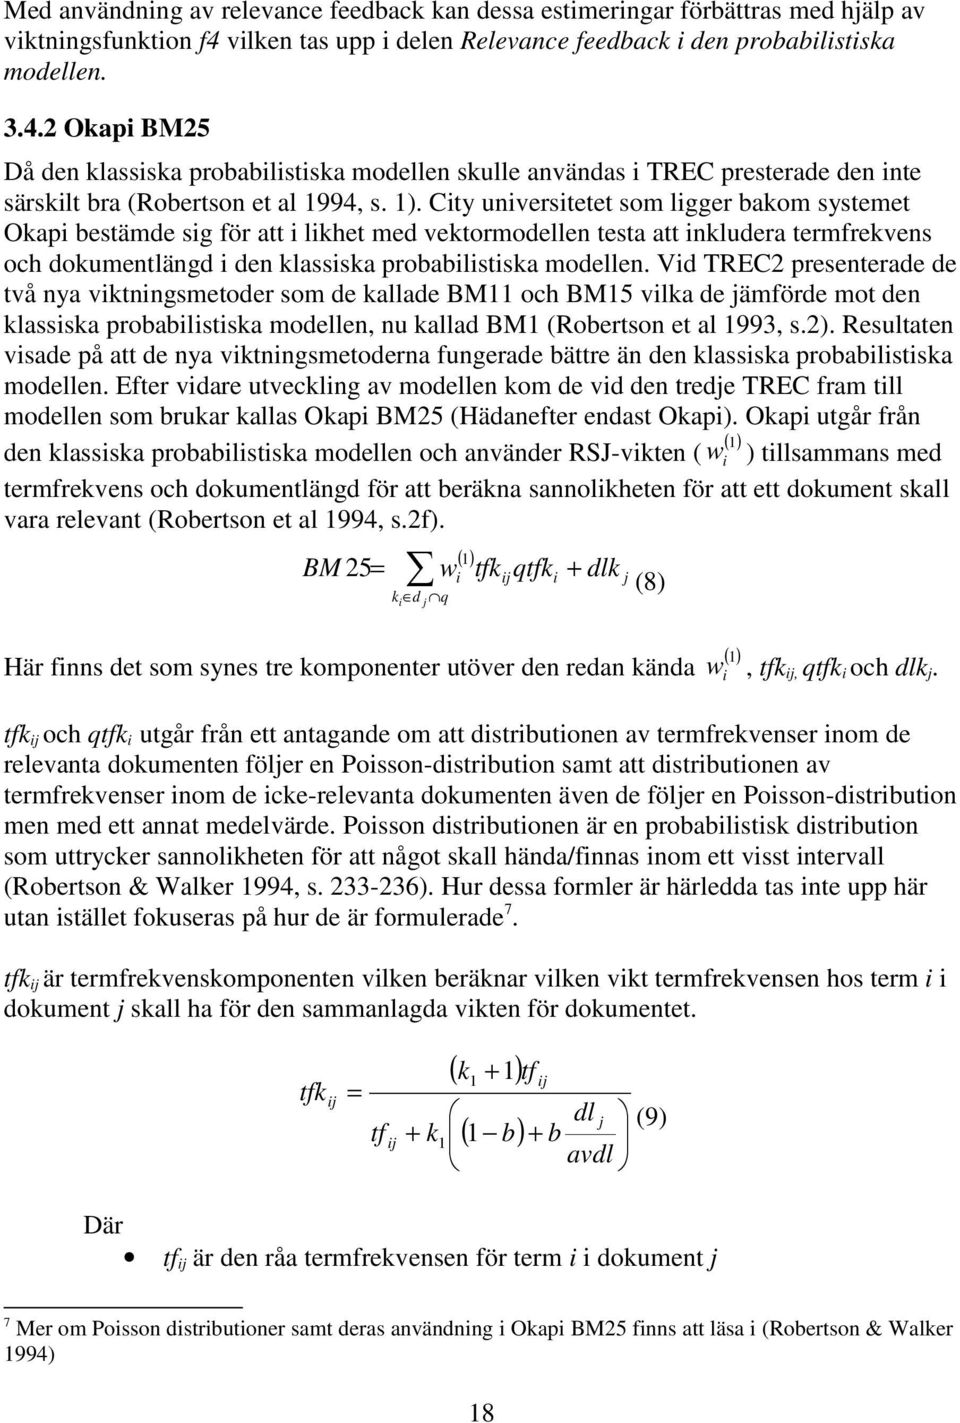 2 Okapi BM25 Då den klassiska probabilistiska modellen skulle användas i TREC presterade den inte särskilt bra (Robertson et al 1994, s. 1).